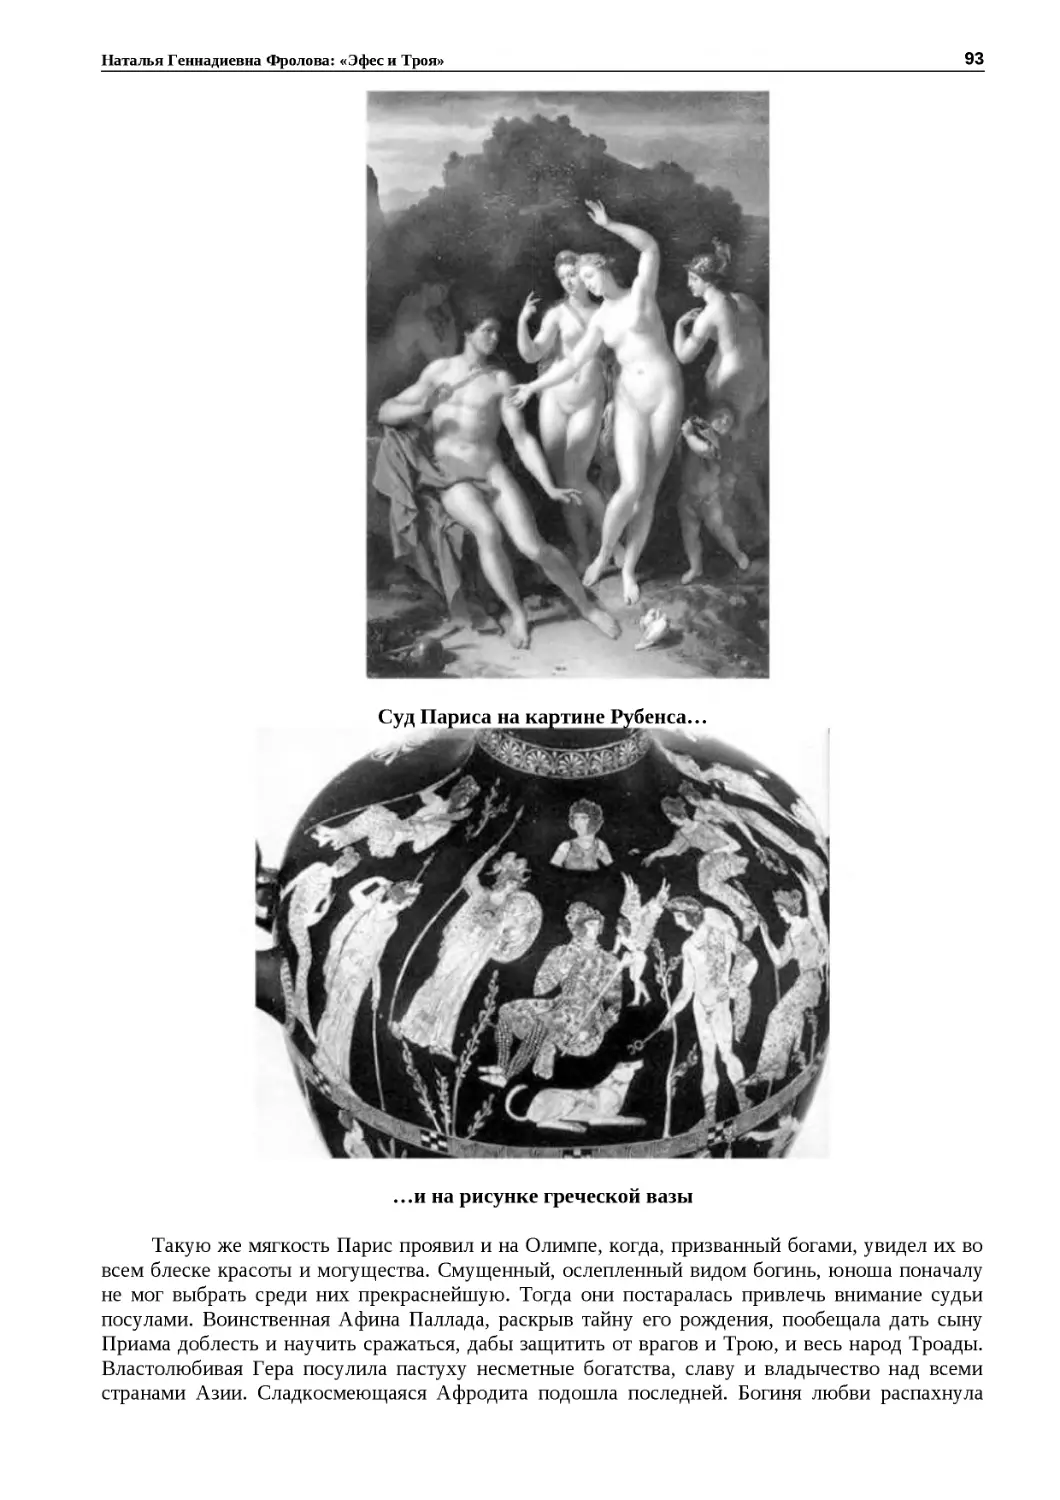 ﻿Суд Париса на картине Рубенса
"
﻿…и на рисунке греческой ваз